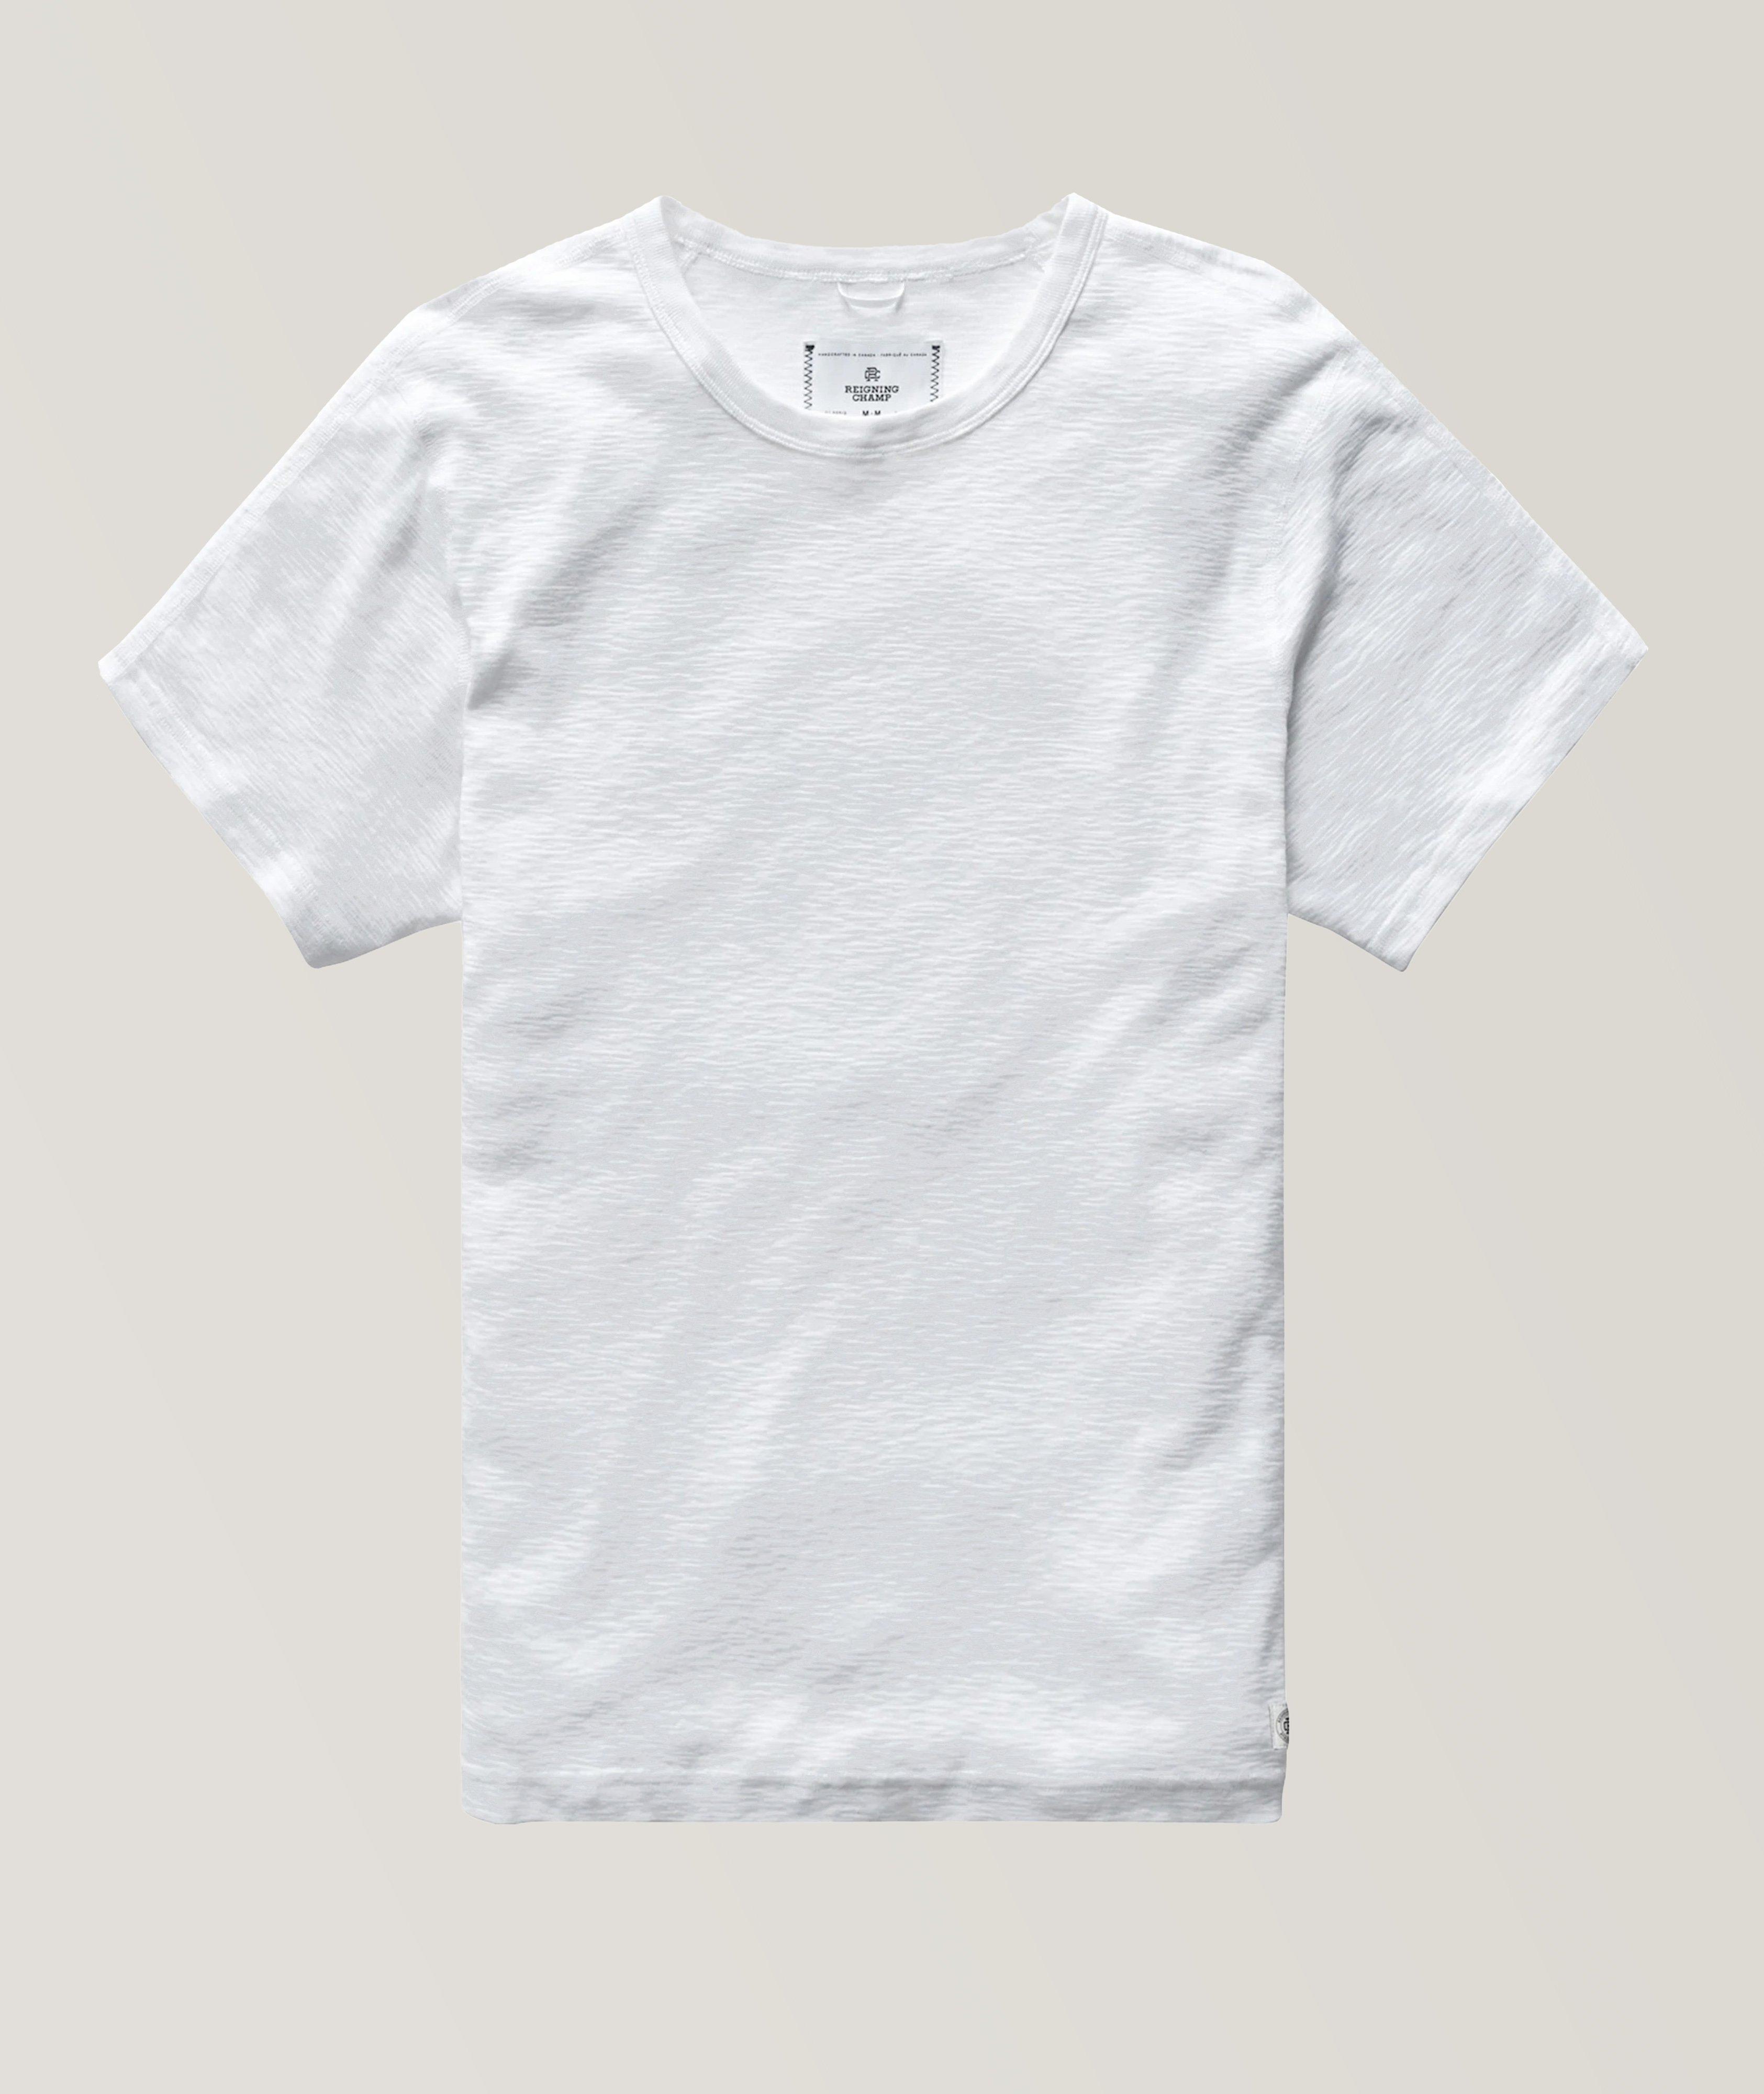 RC1352 Slub Cotton T-Shirt image 0